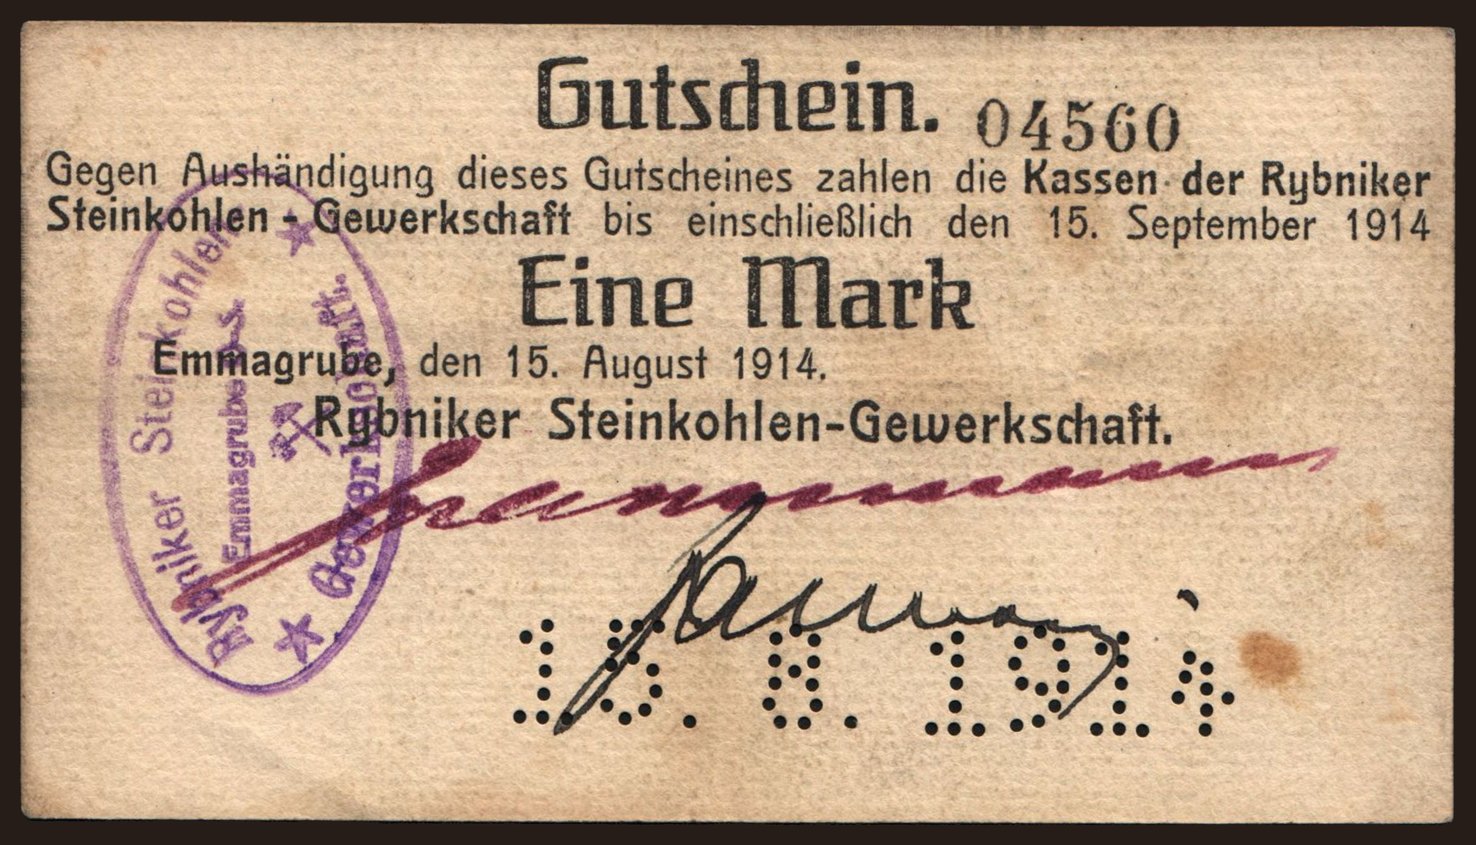 Emmagrube/ Rybniker Steinkohlen-Gewerkschaft, 1 Mark, 1914